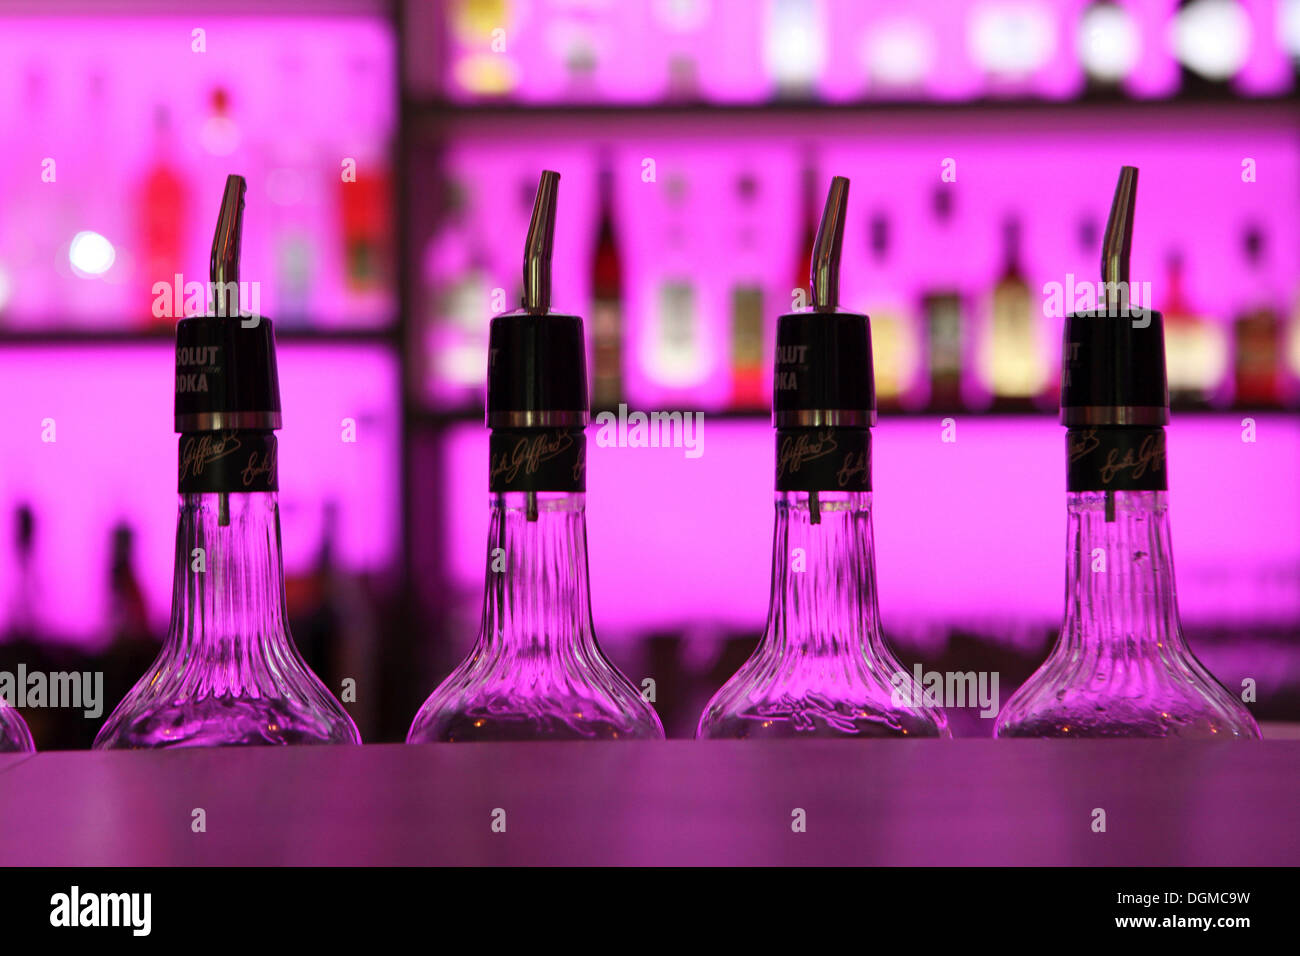 Les bouteilles avec de l'alcool dans un bar Banque D'Images